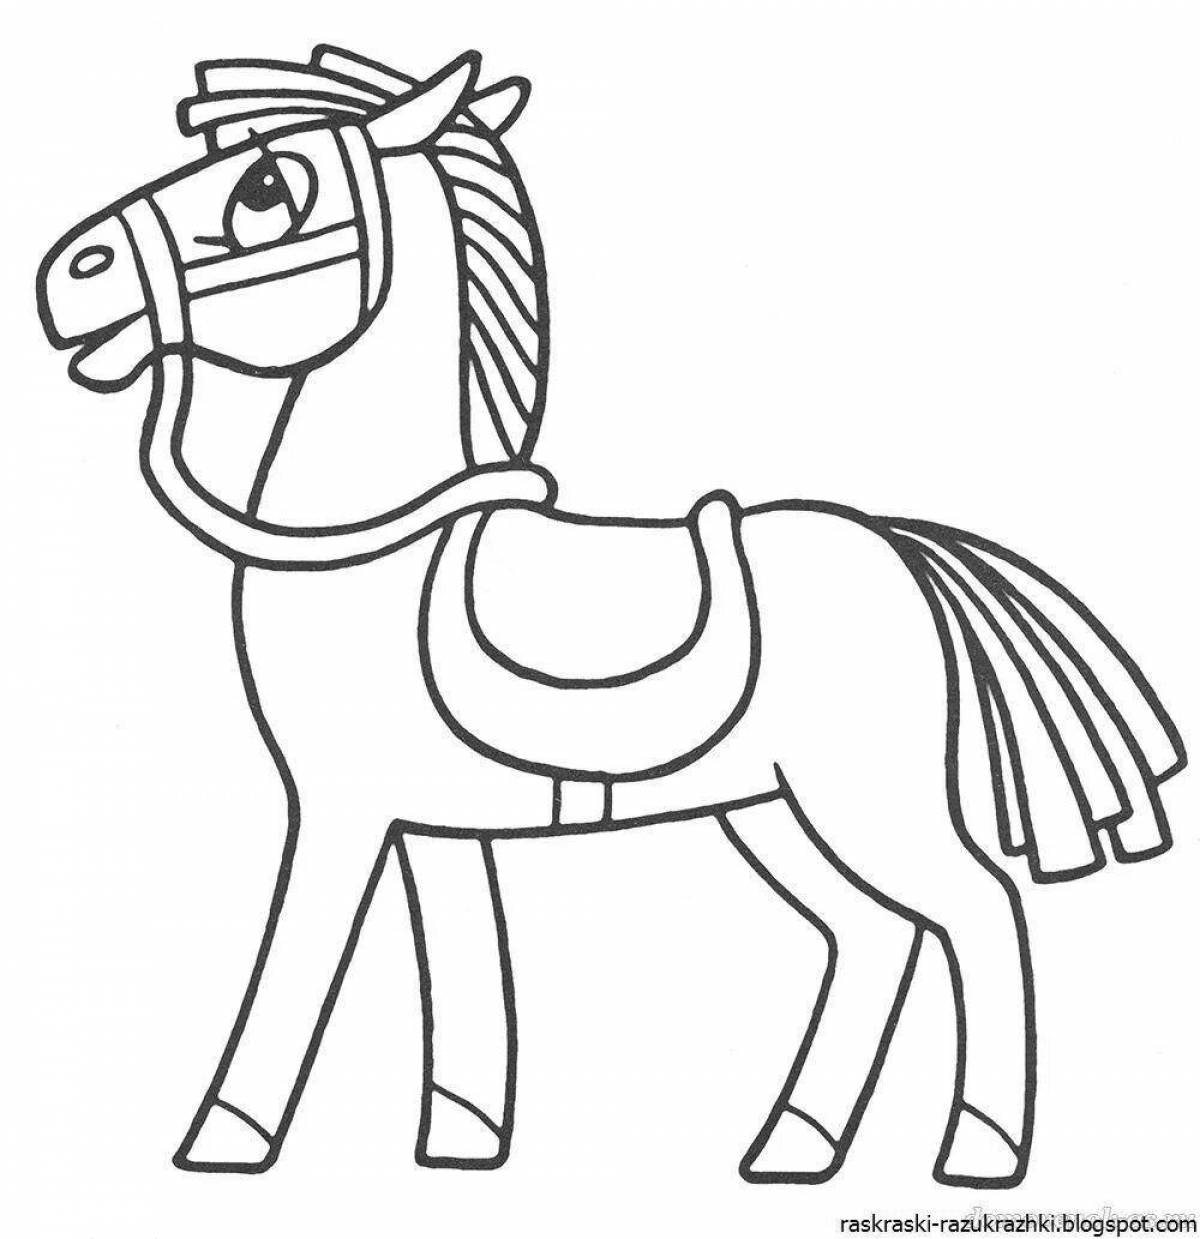 Веселая раскраска «лошадь» для детей 3-4 лет